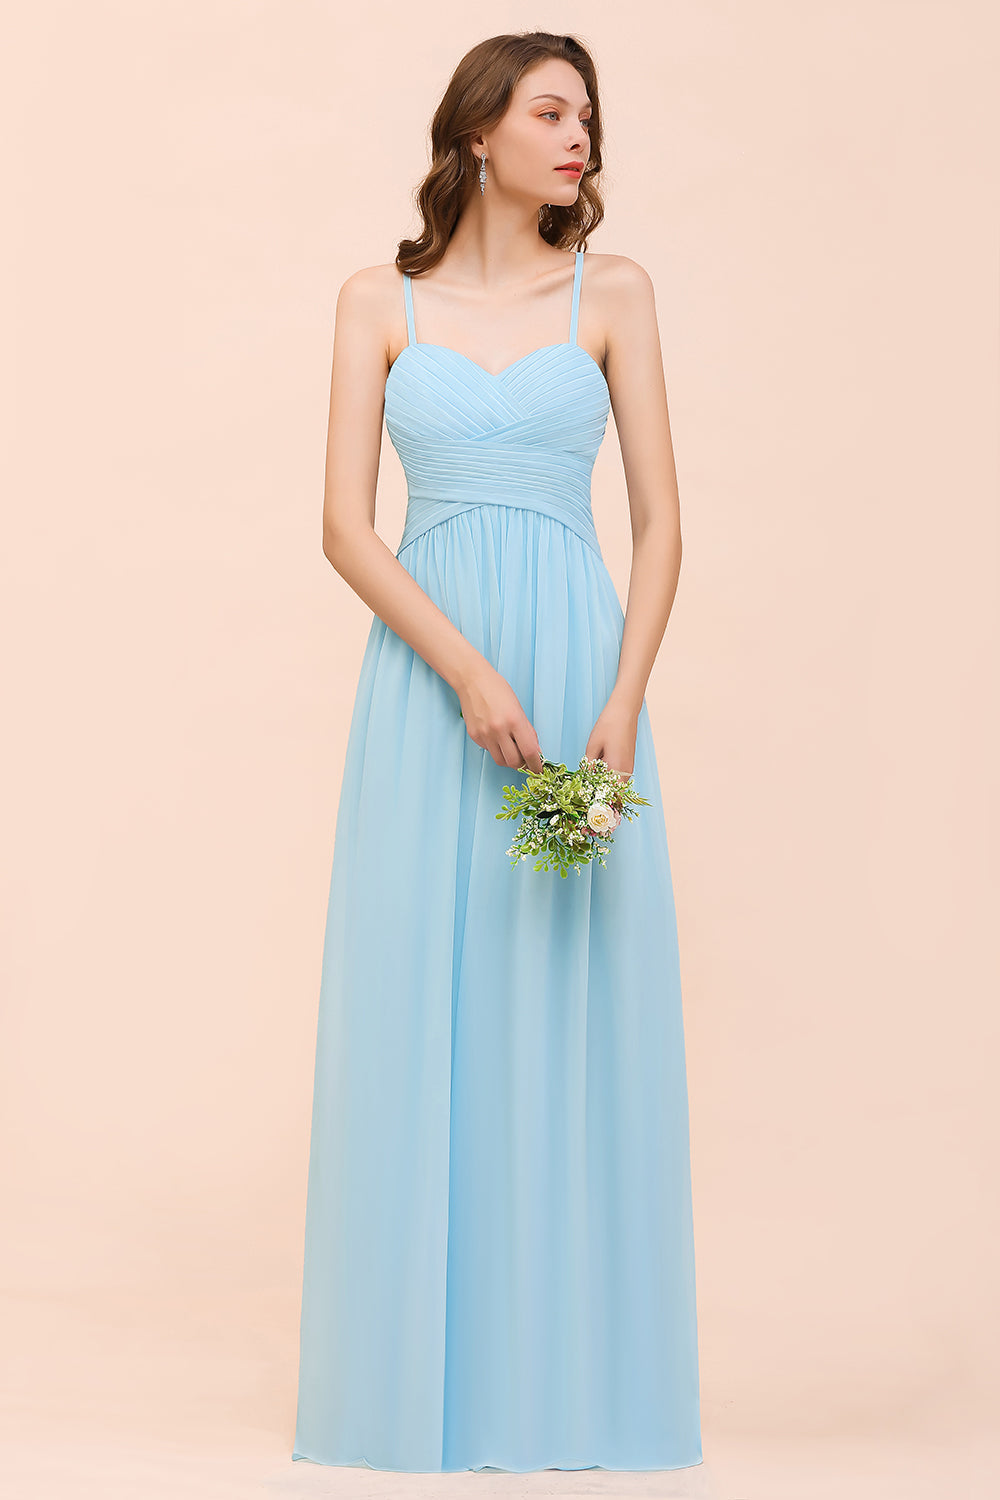 Suchen Sie Heller Blau Brautjungfernkleider Günstig online bei babyonlinedress.de. Langes Brautjungfernkleid Online für Sie zur Hochzeit gehen.